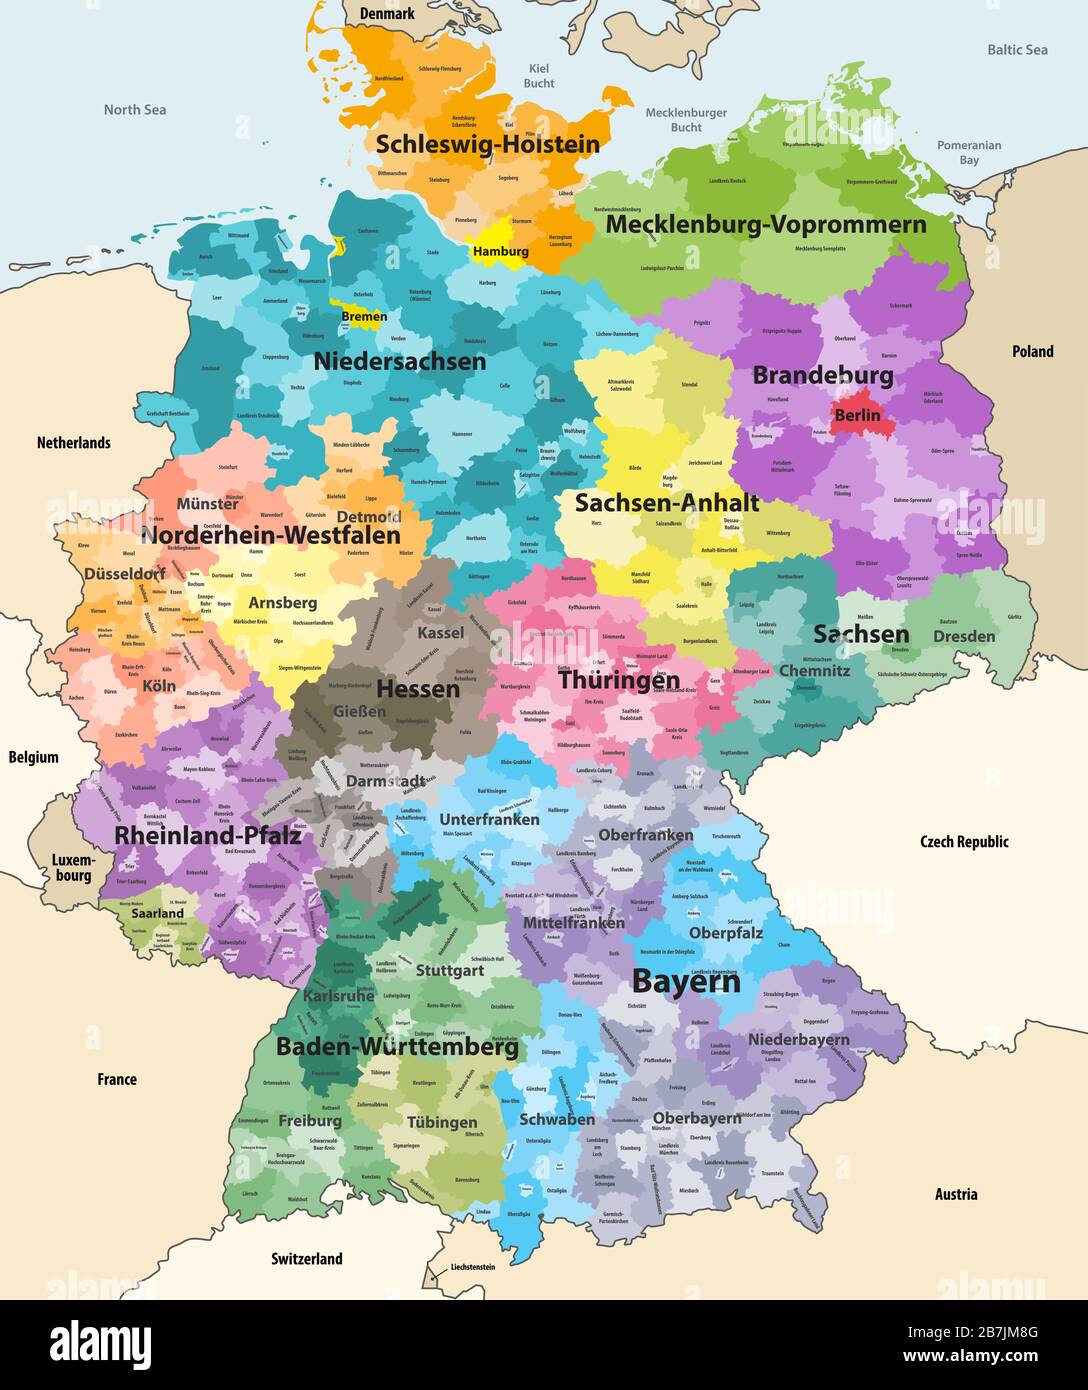 Carte vectorielle détaillée de l'Allemagne avec les pays et territoires voisins. Carte colorée par états et districts administratifs, avec subdivisions Illustration de Vecteur